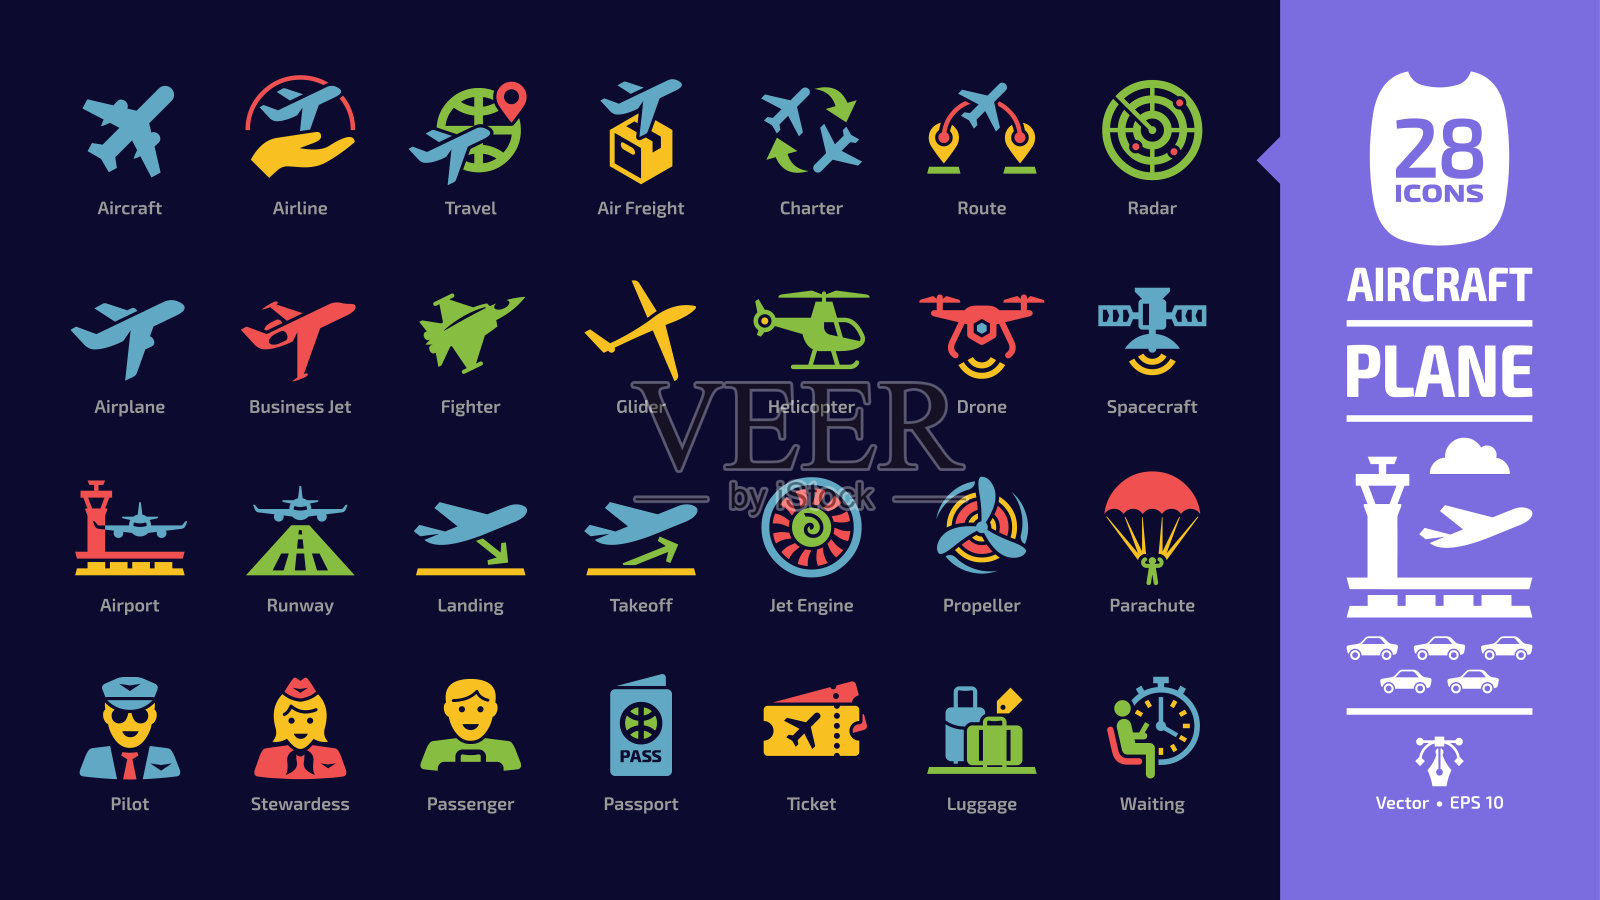 飞机颜色图标设置在黑暗模式与飞行飞机字形符号:飞机，公务机，机场，飞行飞机，商业航空，旅行航空，军用战斗机，航空公司，货运航空运输。插画图片素材